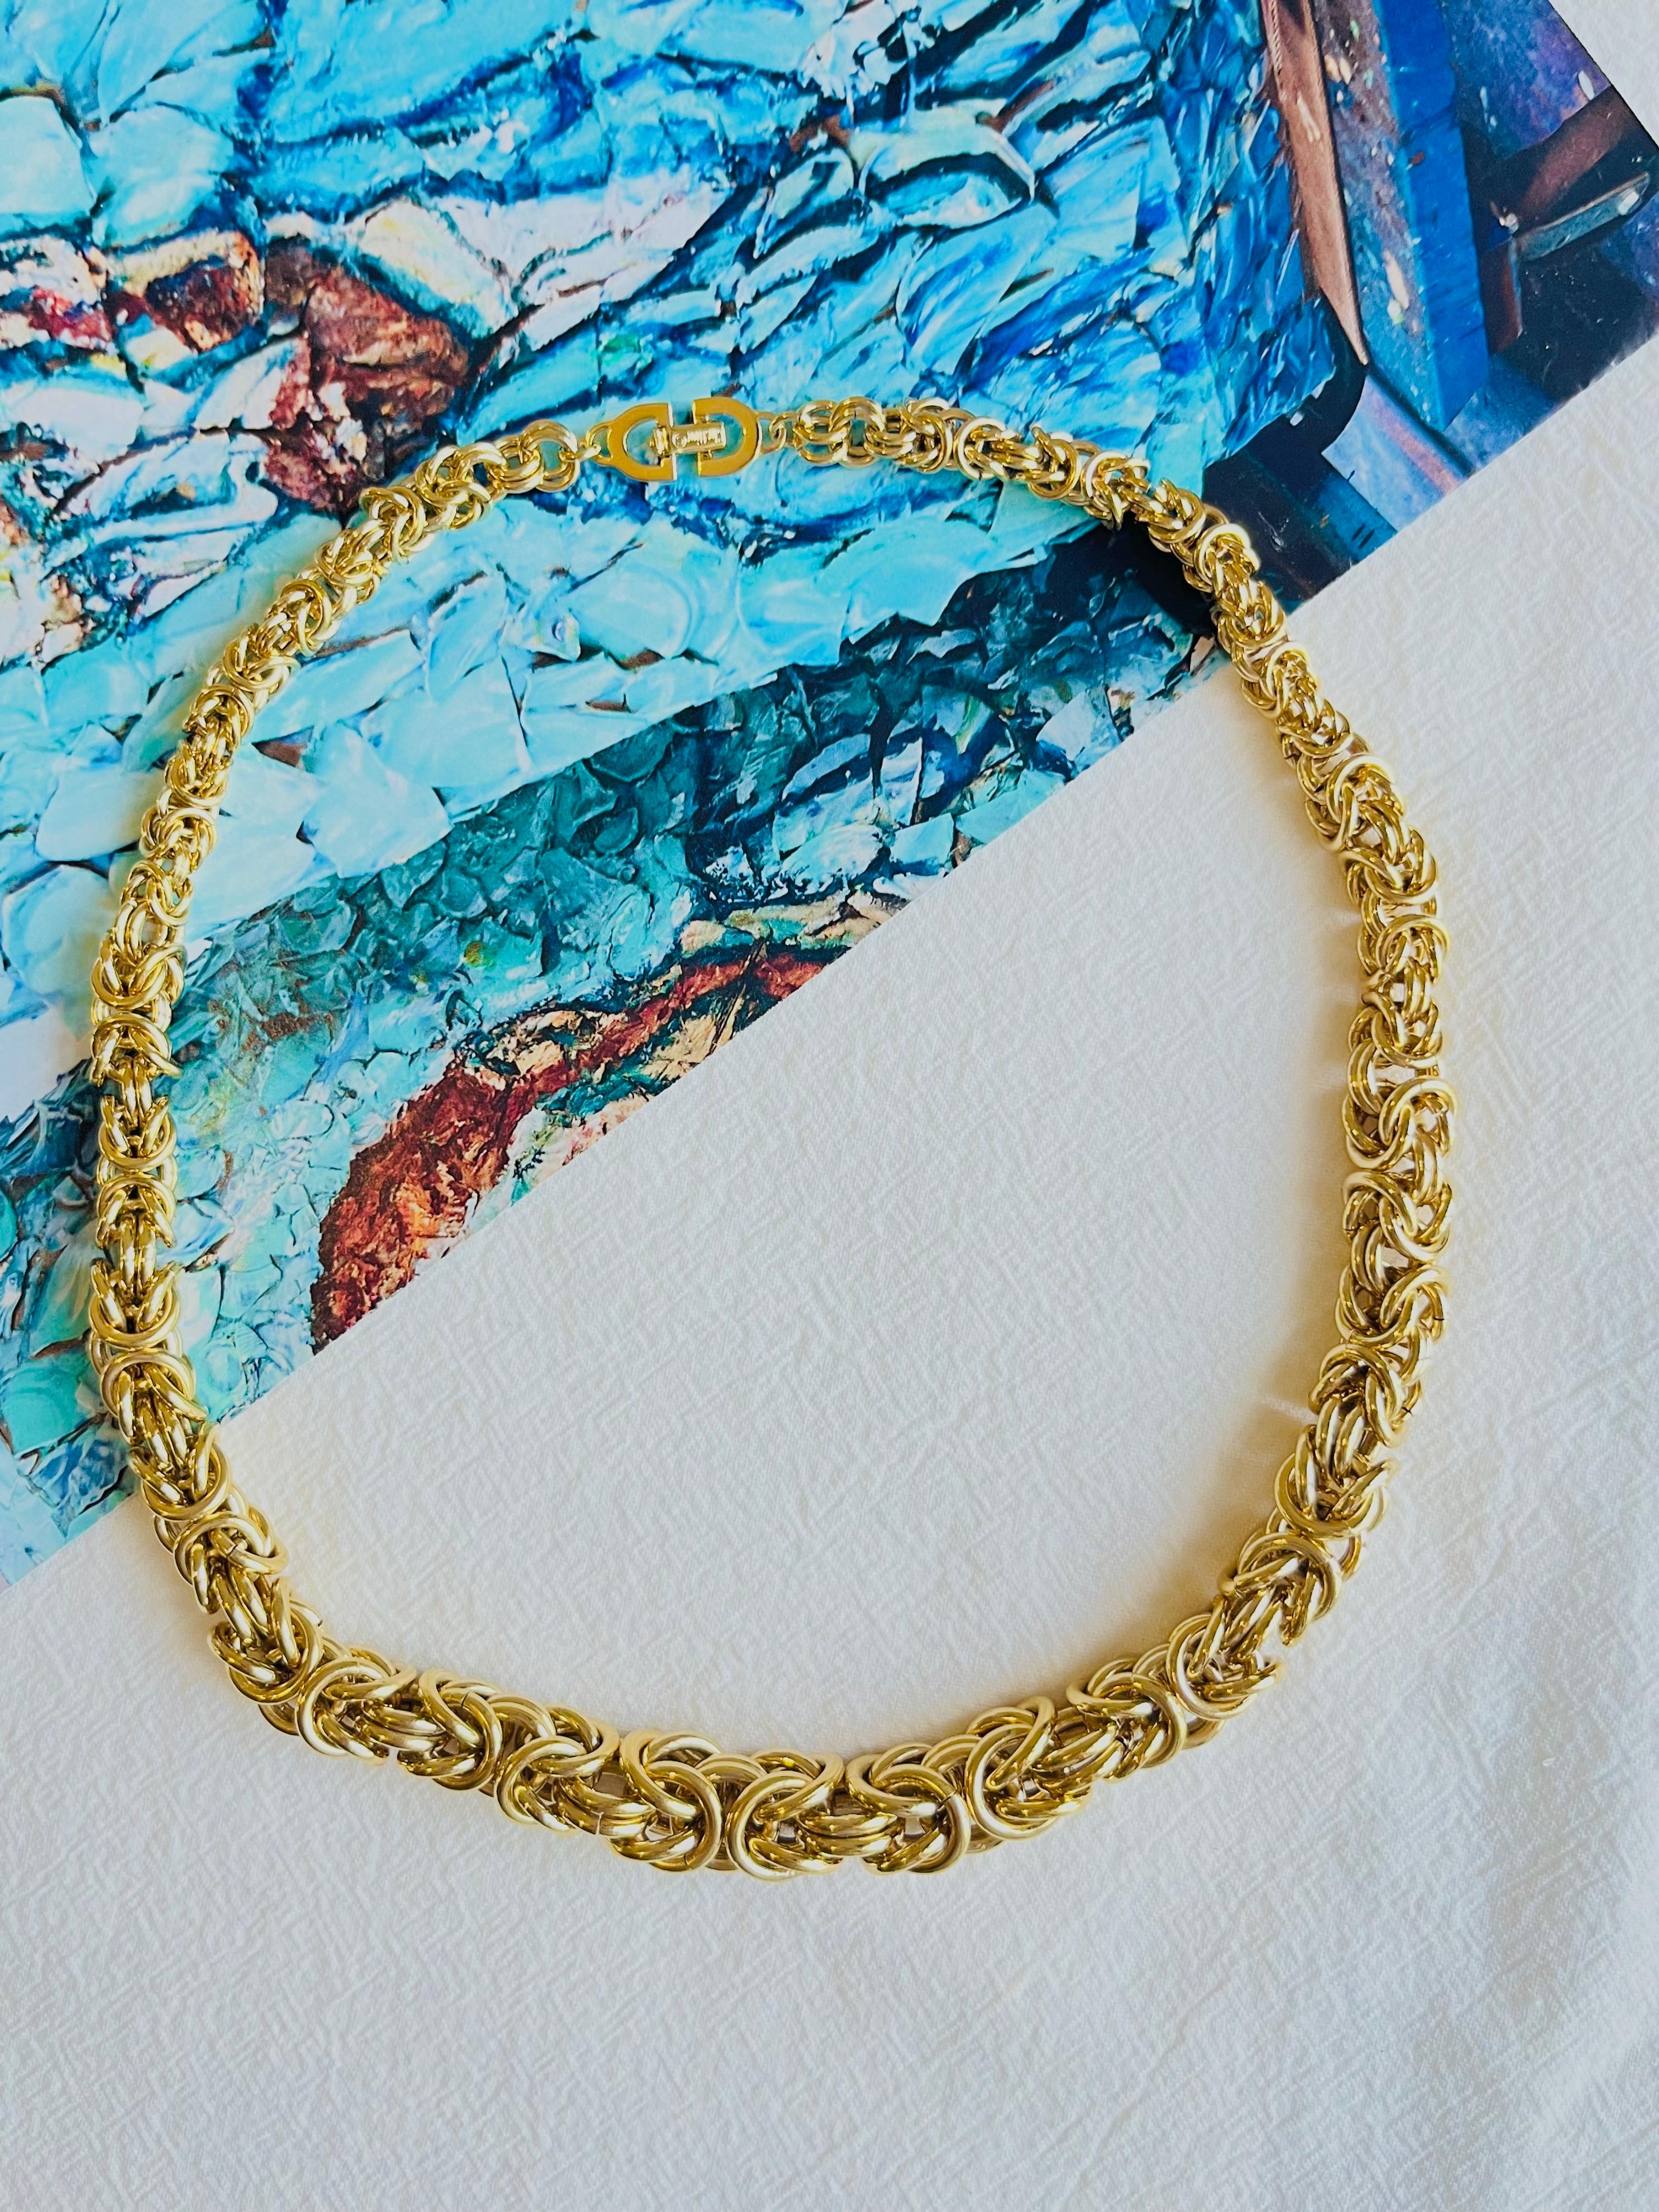 Christian Dior Vintage 1980er Jahre byzantinischen Geflecht Royal Mesh Knoten Link Seil Unisex Modernist klobig Erklärung Halskette, vergoldet

Sehr guter Zustand. 100% echt. Selten zu finden.

Die Halskette ist ein echter Hingucker. Sein